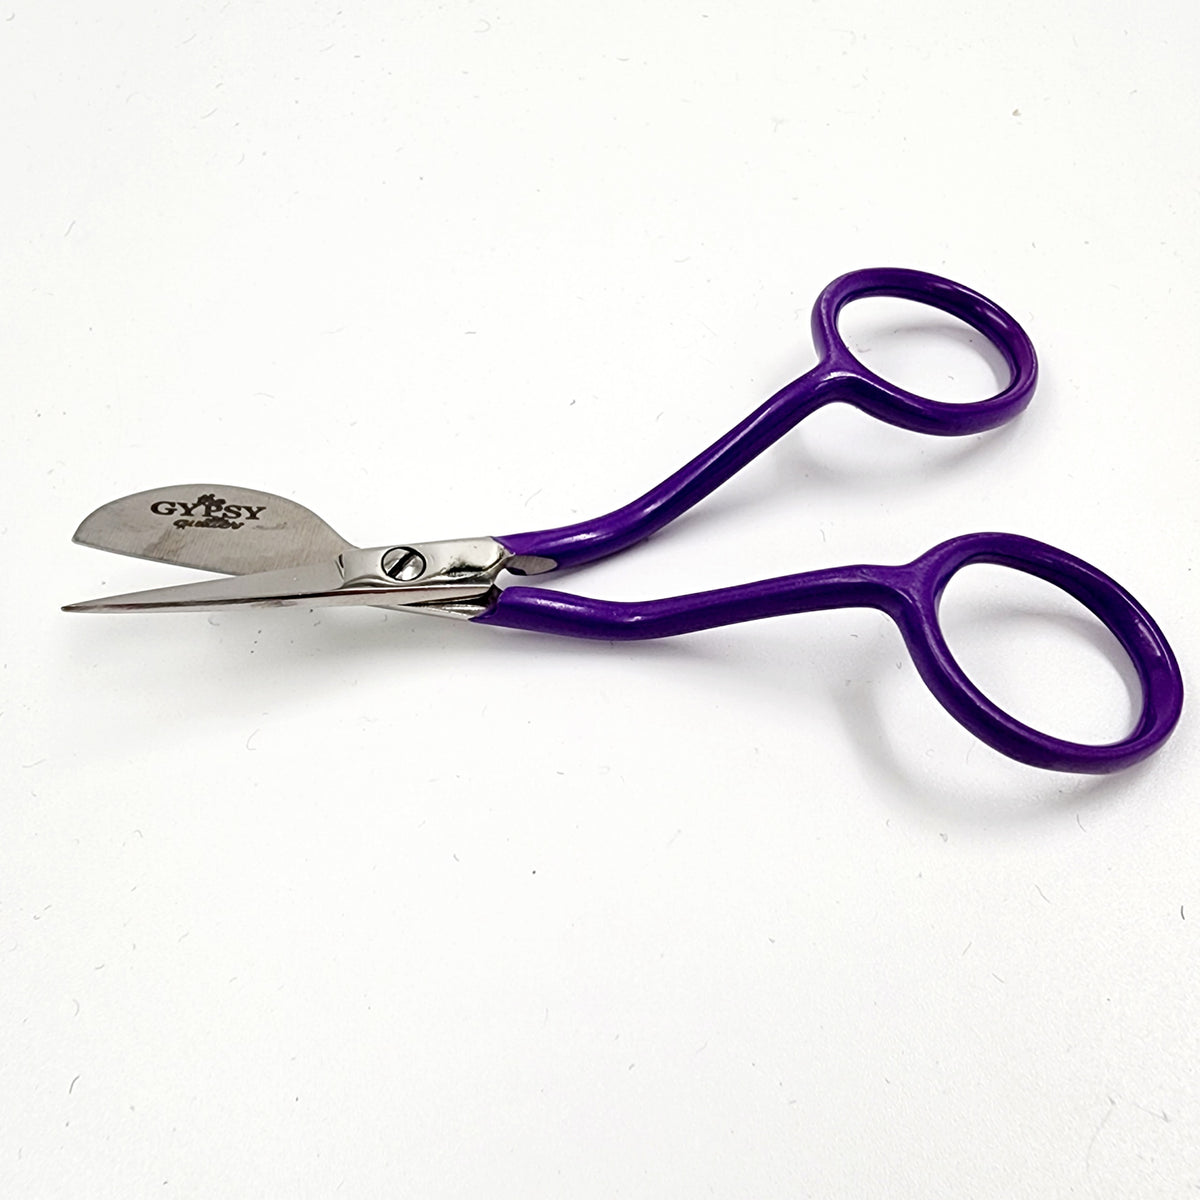 The Gypsy Mini Duckbill Applique Scissors